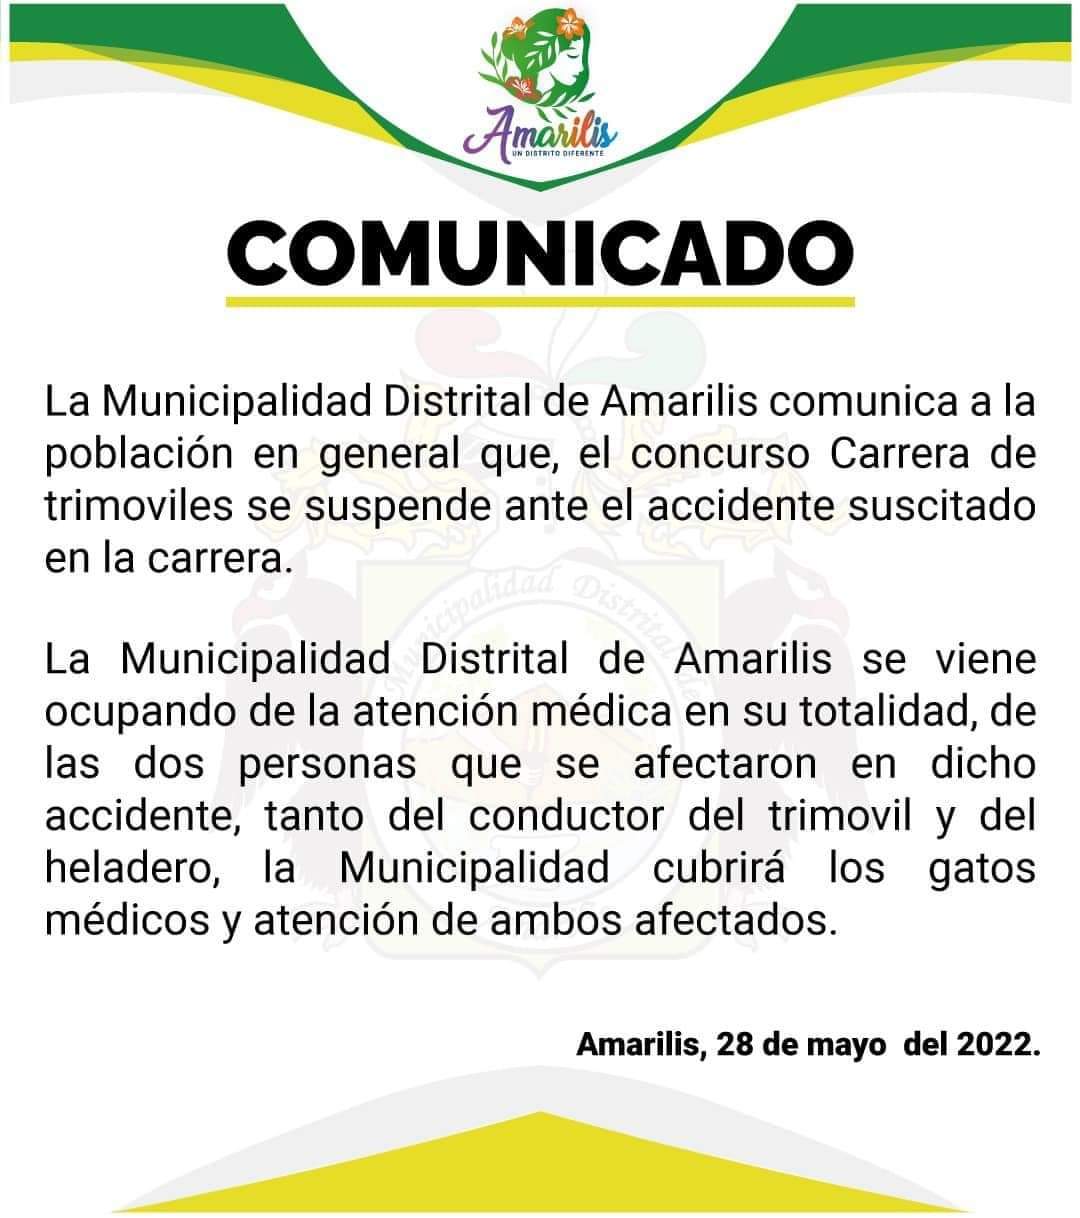 Comunicado de la municipalidad de Amarilis.